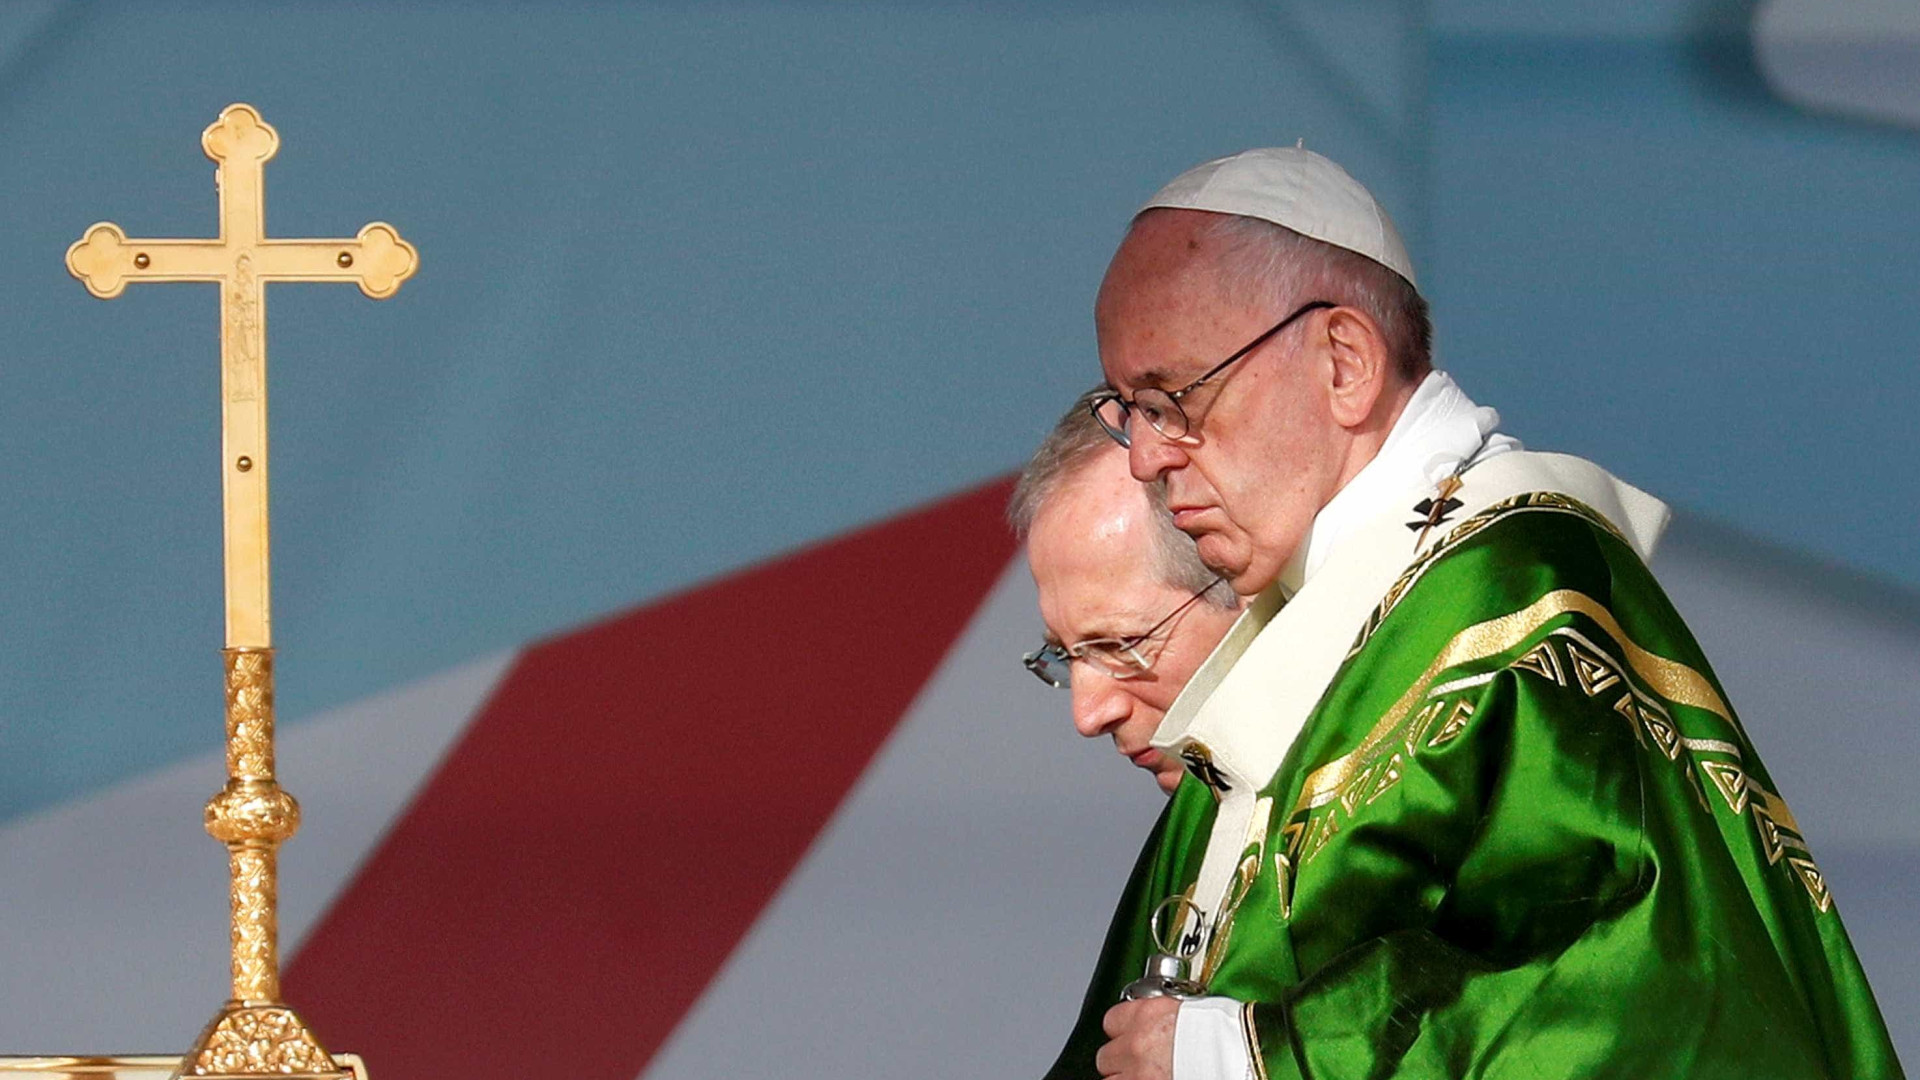 Papa Francisco reza por vítimas da tragédia em Brumadinho